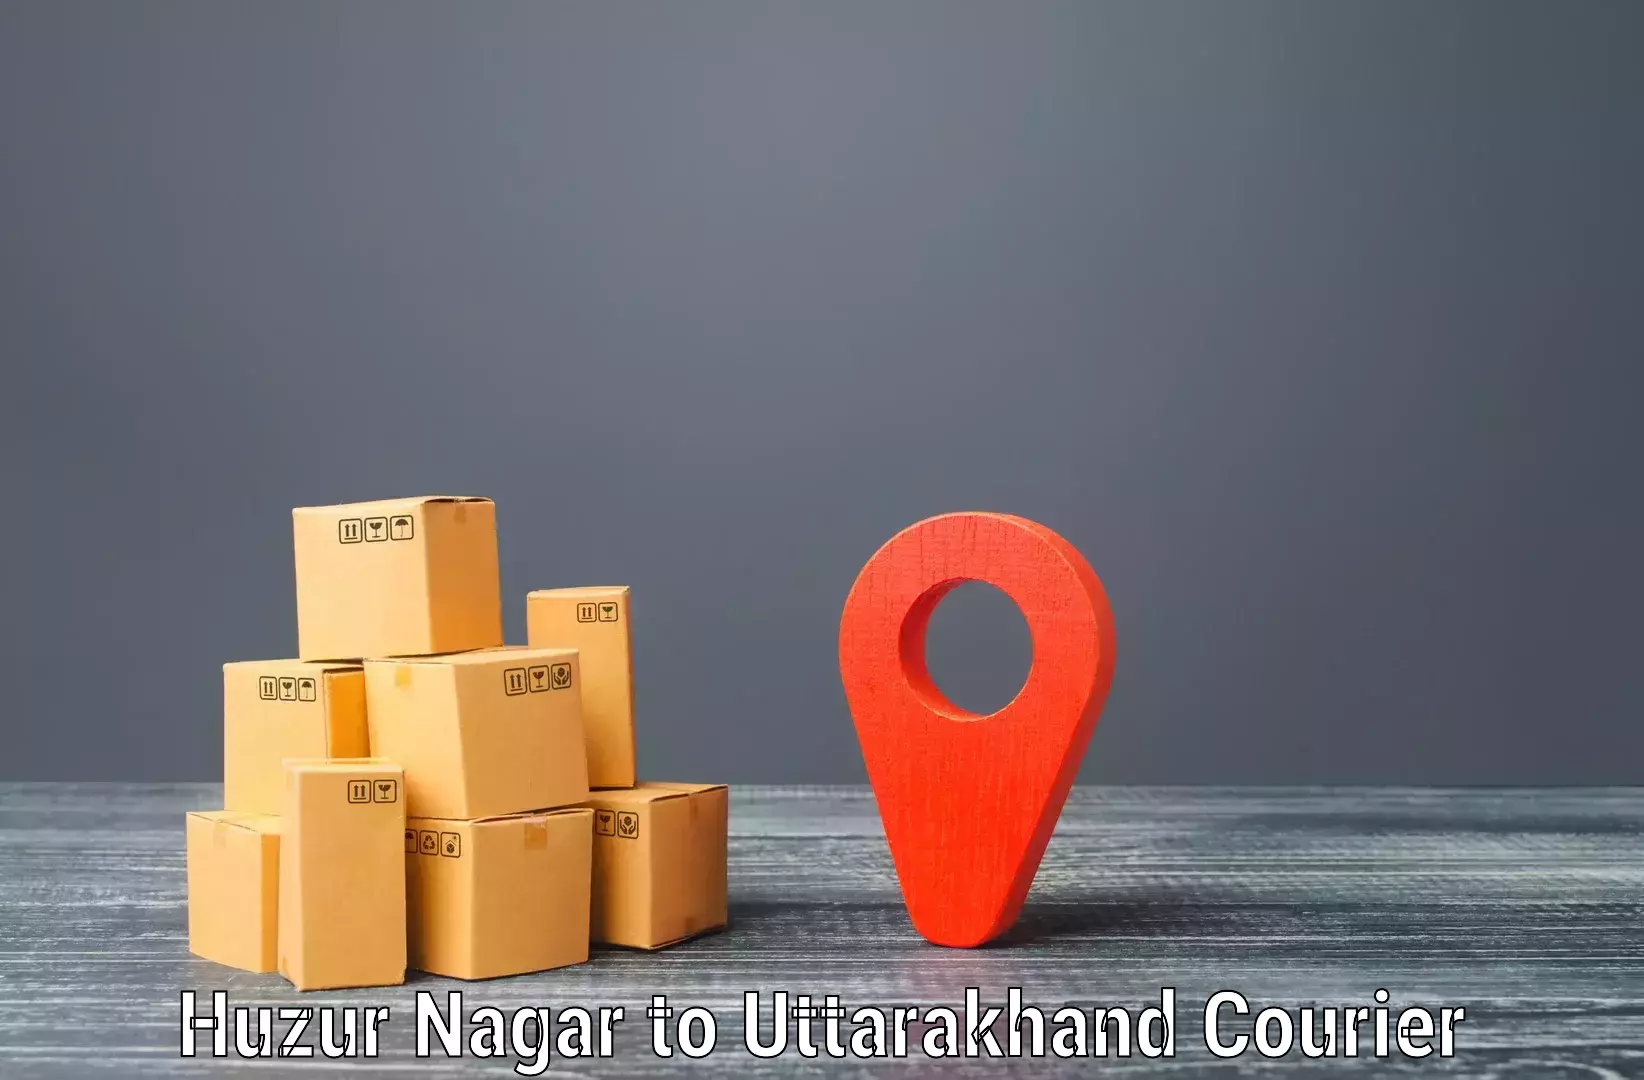 Medical delivery services Huzur Nagar to Tehri Garhwal